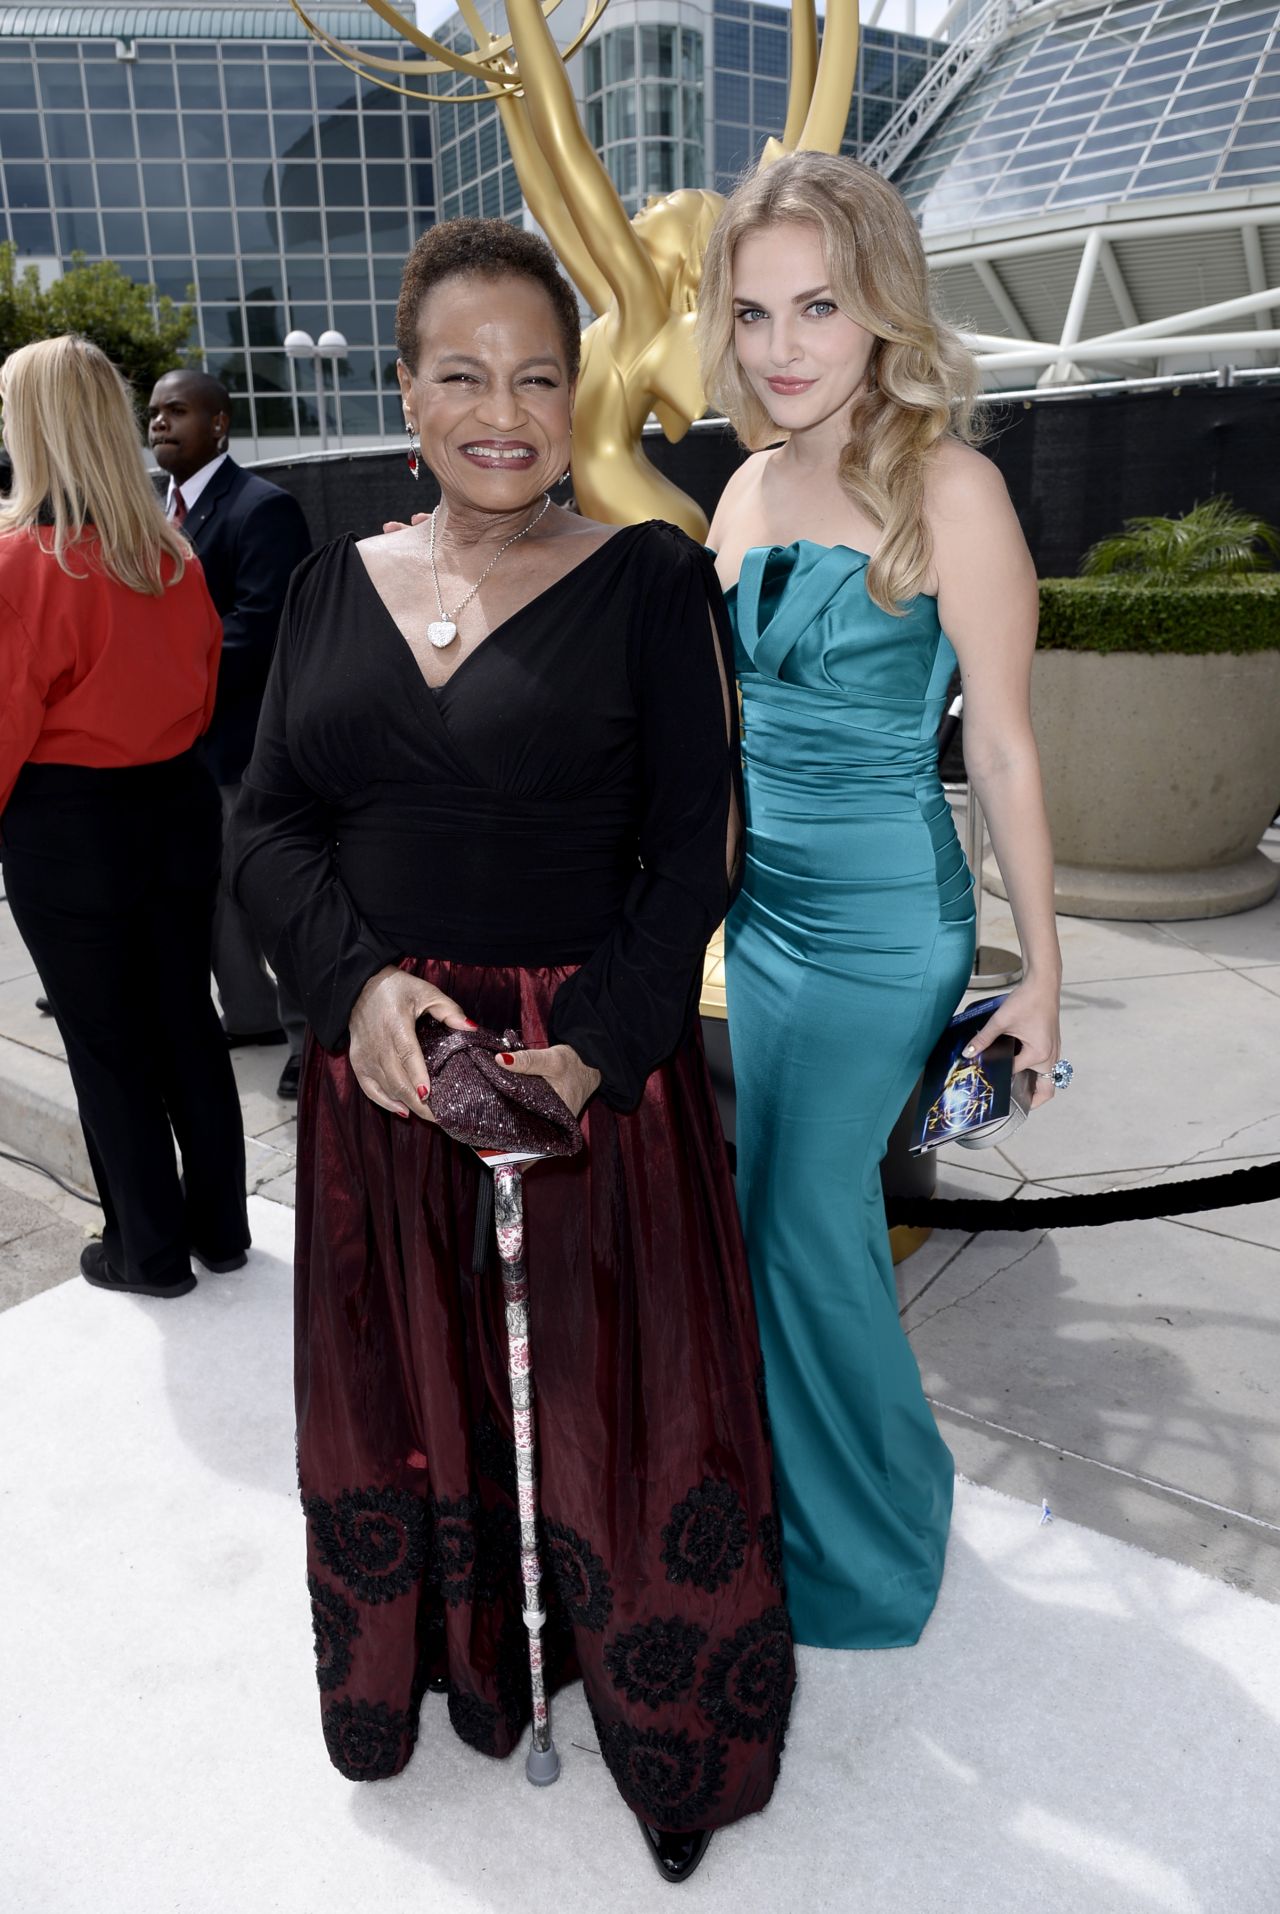 Madeline Brewer – 2014 Primetime Emmy Awards in Los Angeles